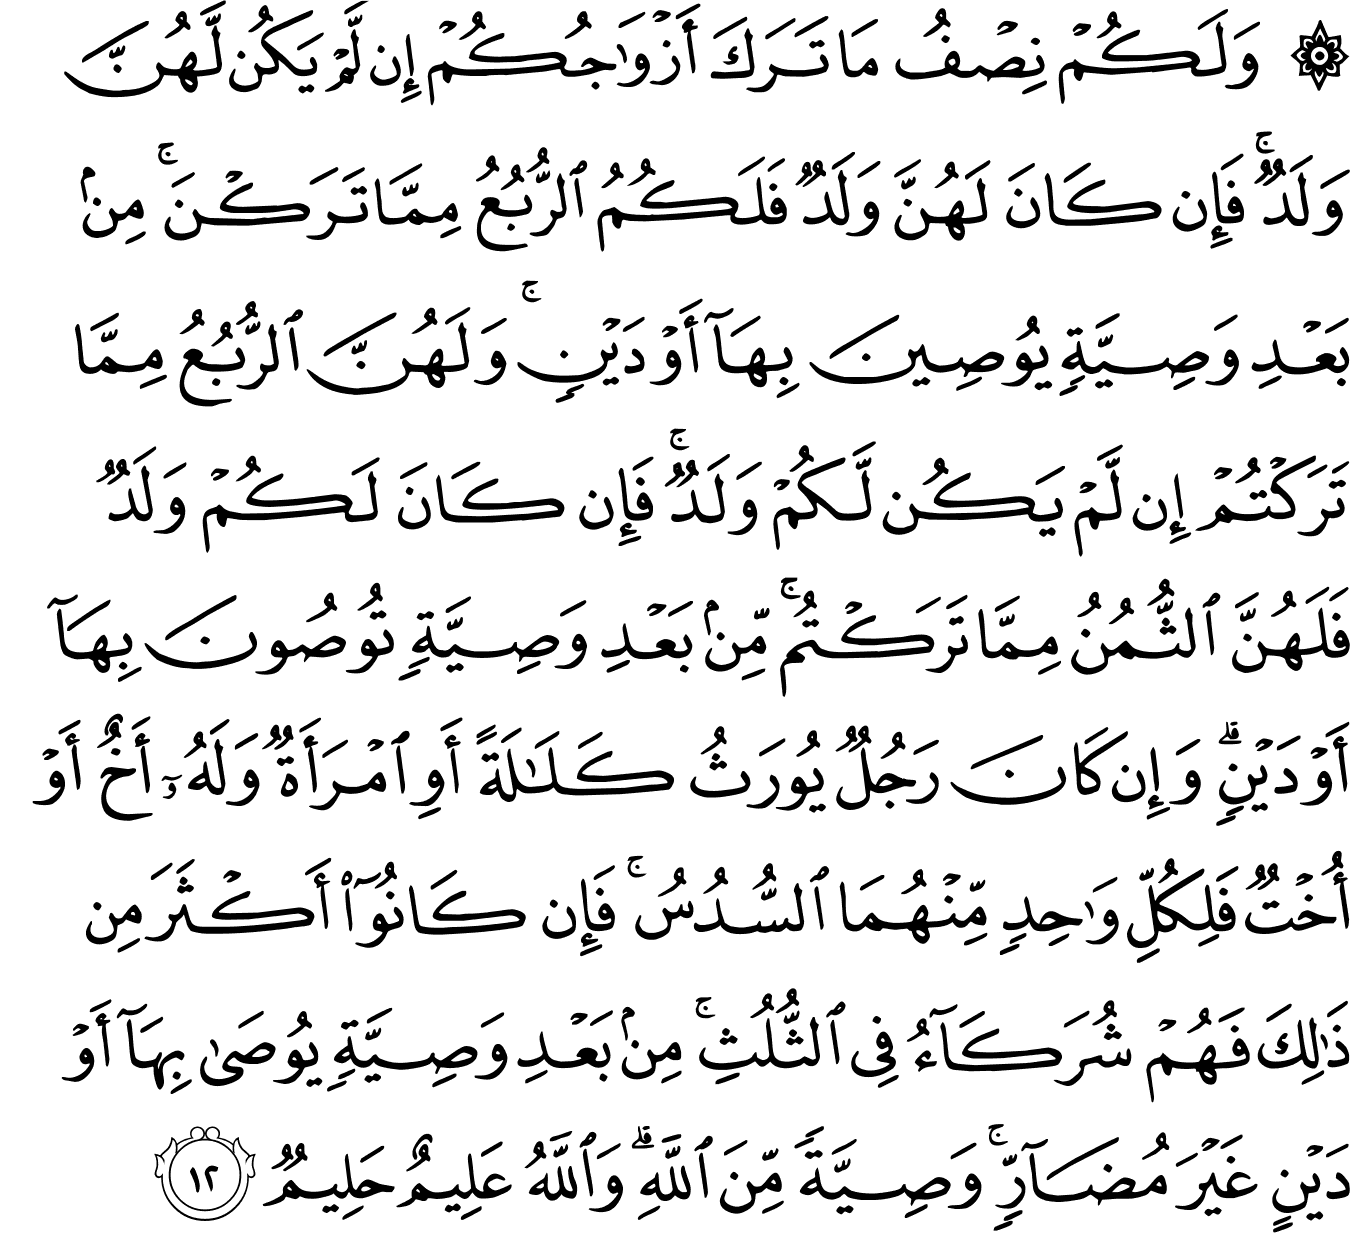 Surat An-Nisa' [4:12] - The Noble Qur'an - القرآن الكريم